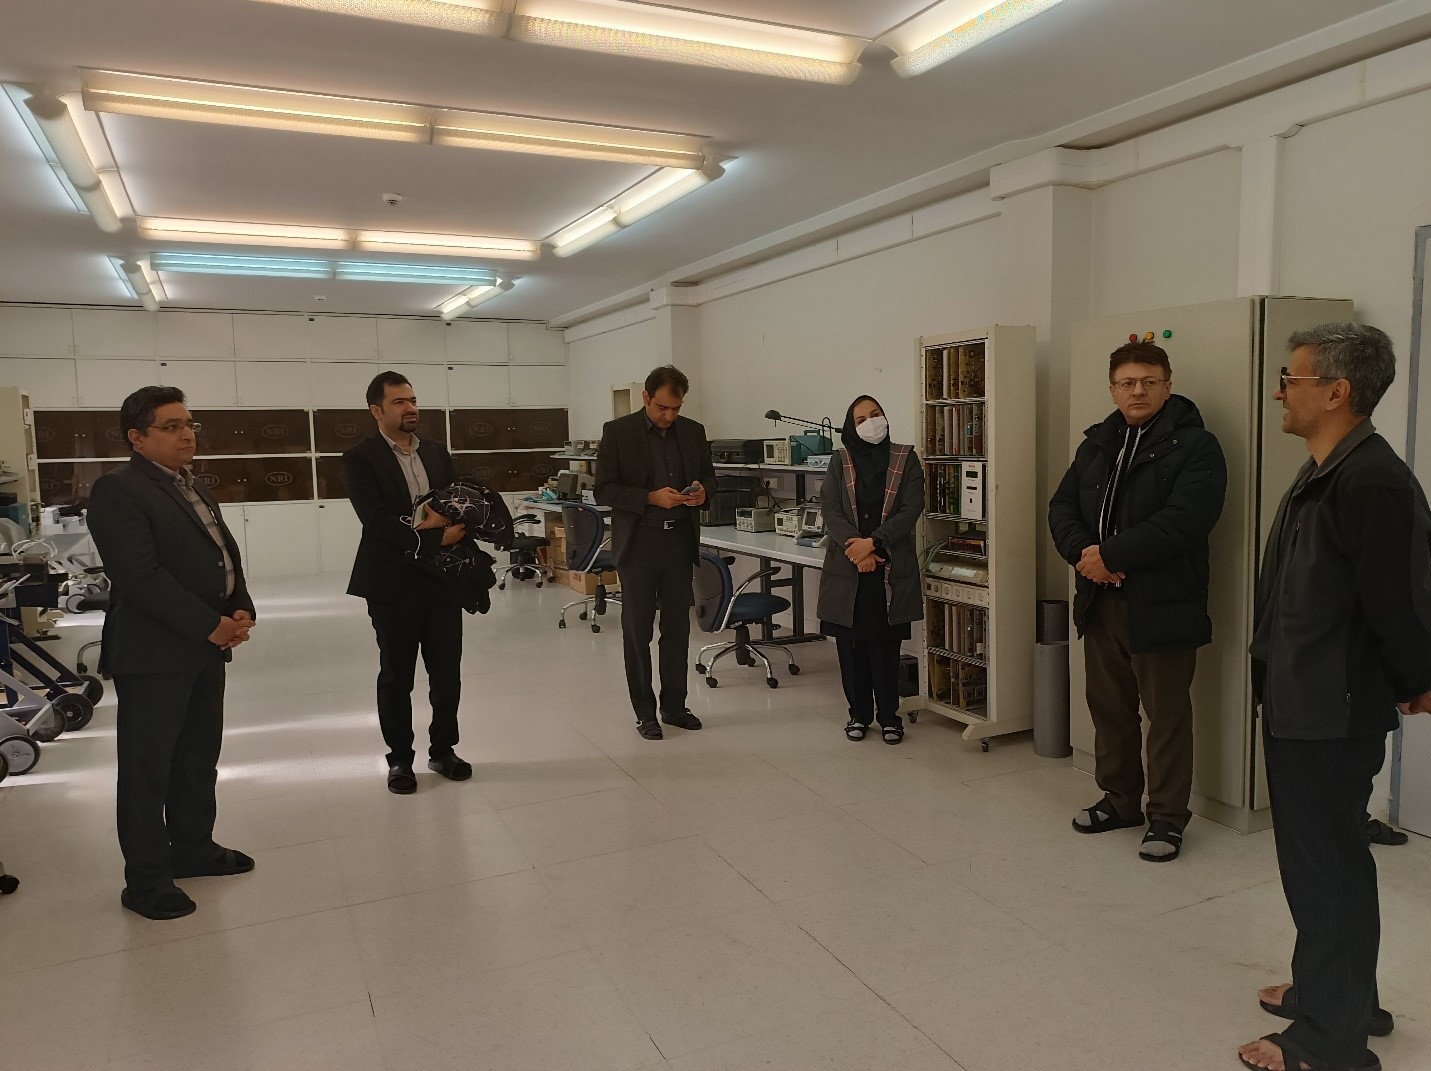 بازدید مدیران شرکت توزیع نیروی برق جنوب استان کرمان از امکانات آزمایشگاهی پژوهشگاه نیرو 